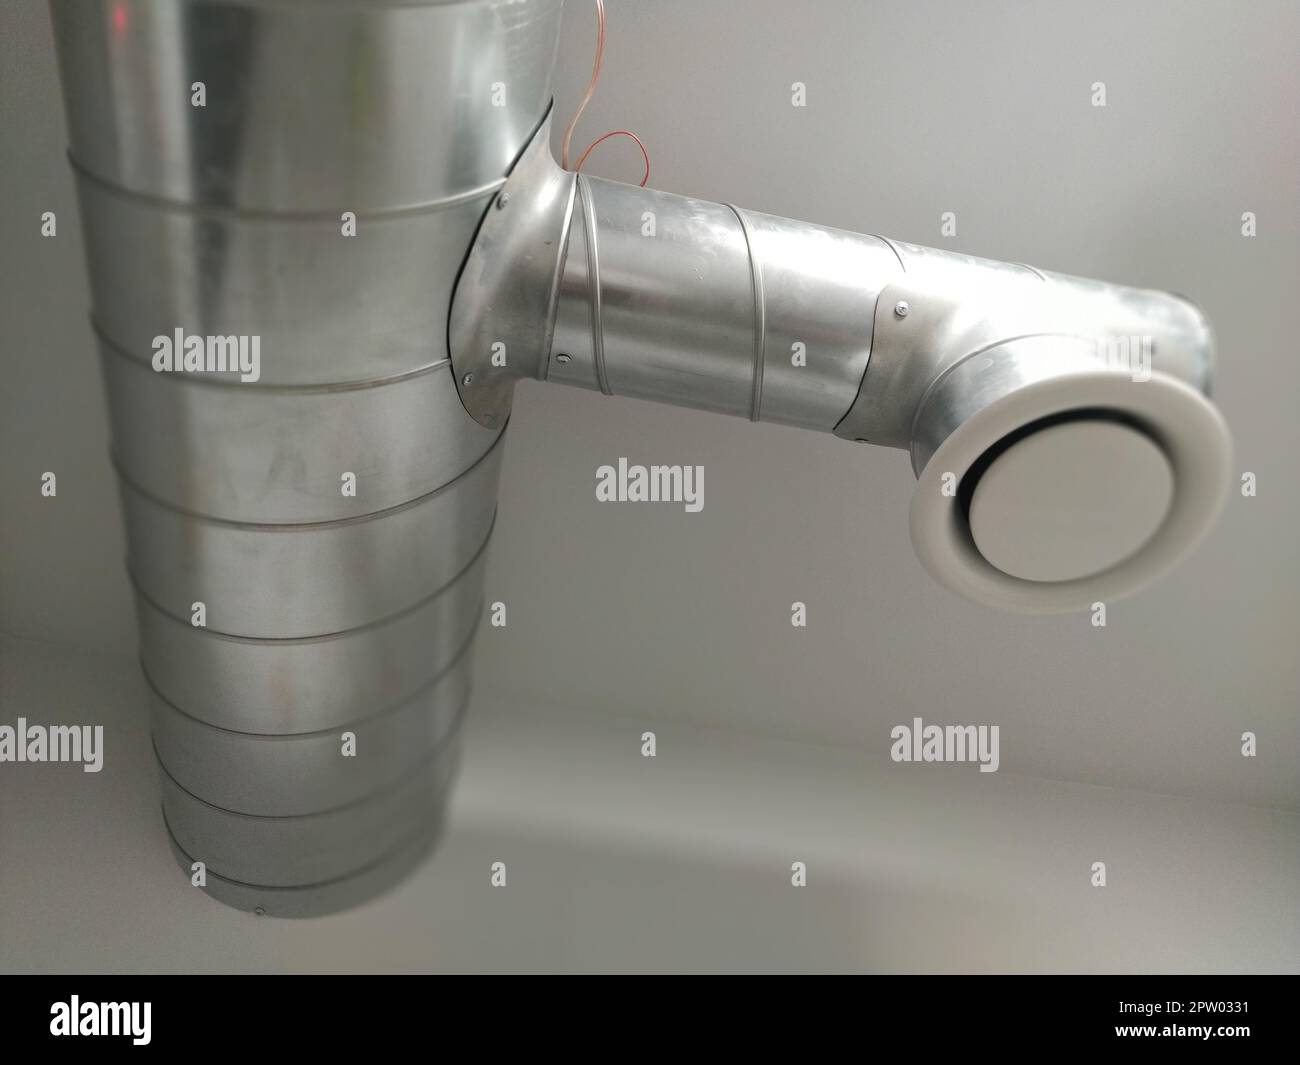 Campana extractora en un baño público tubo metálico redondo con extractor  de aire gris ventilación de ingeniería